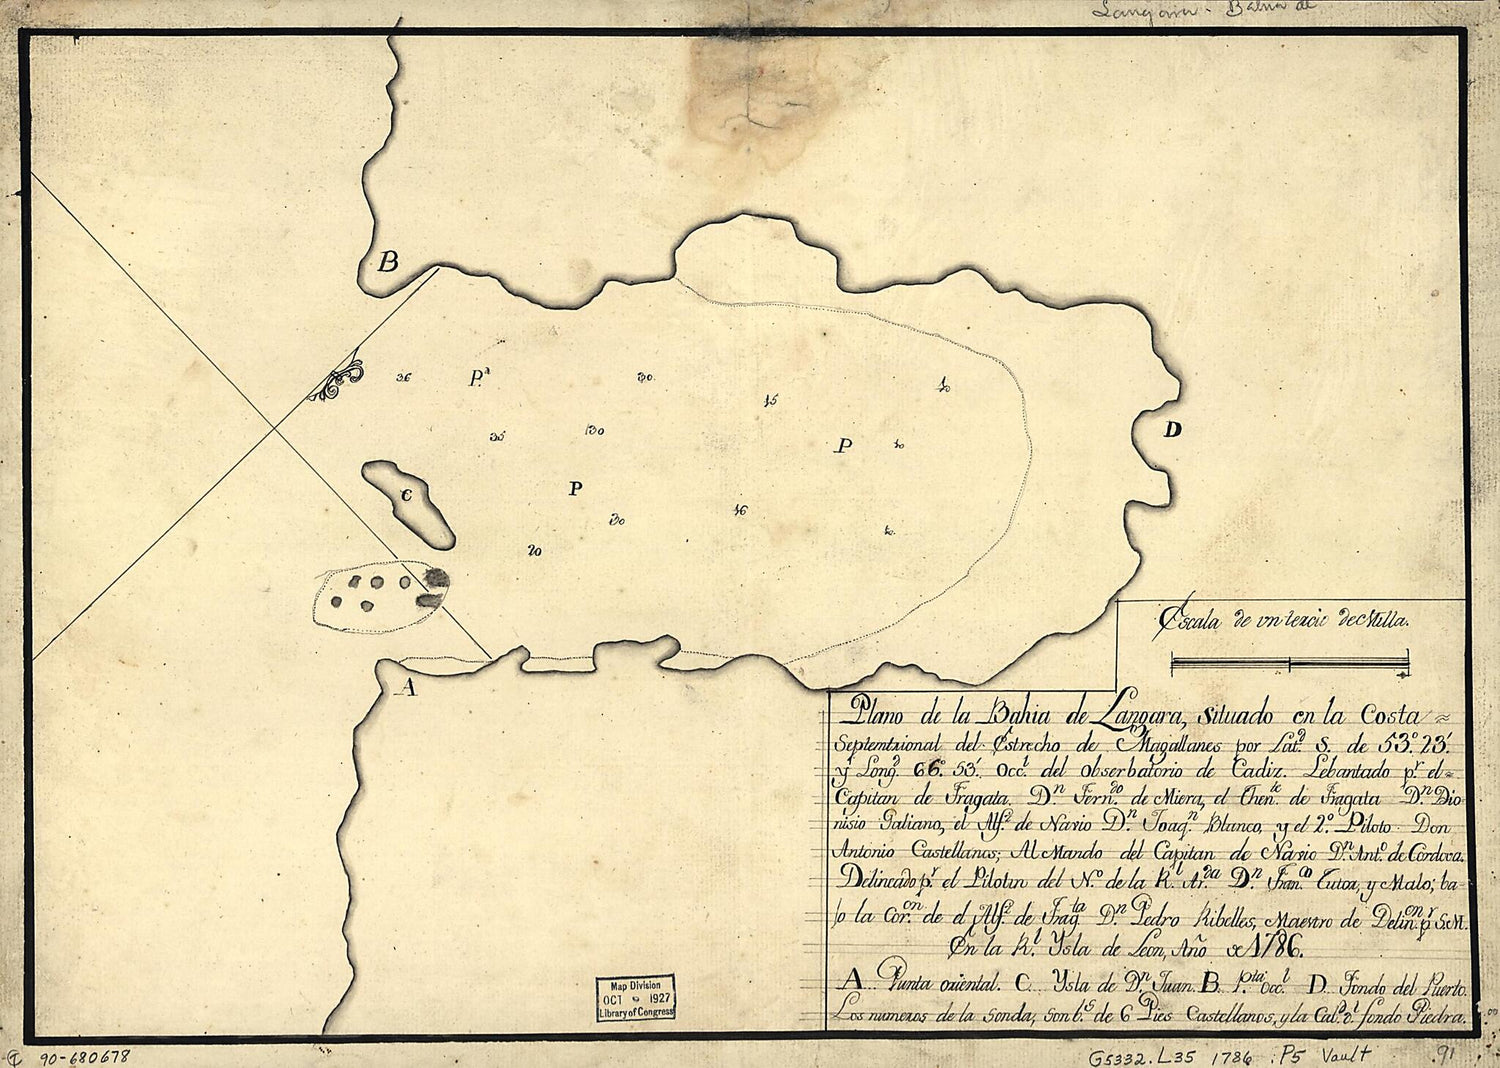 This old map of Plano De La Bahía De Lángara Situado En La Costa Septemtrional Del Estrecho De Magallanes Por Latd. S. De 53⁰23ʹ Y Longd. 66⁰53ʹ Occl. Del Obserbatorio De Cádiz from 1786 was created by Fernando De Miera, Francisco Tutor Y Malo i